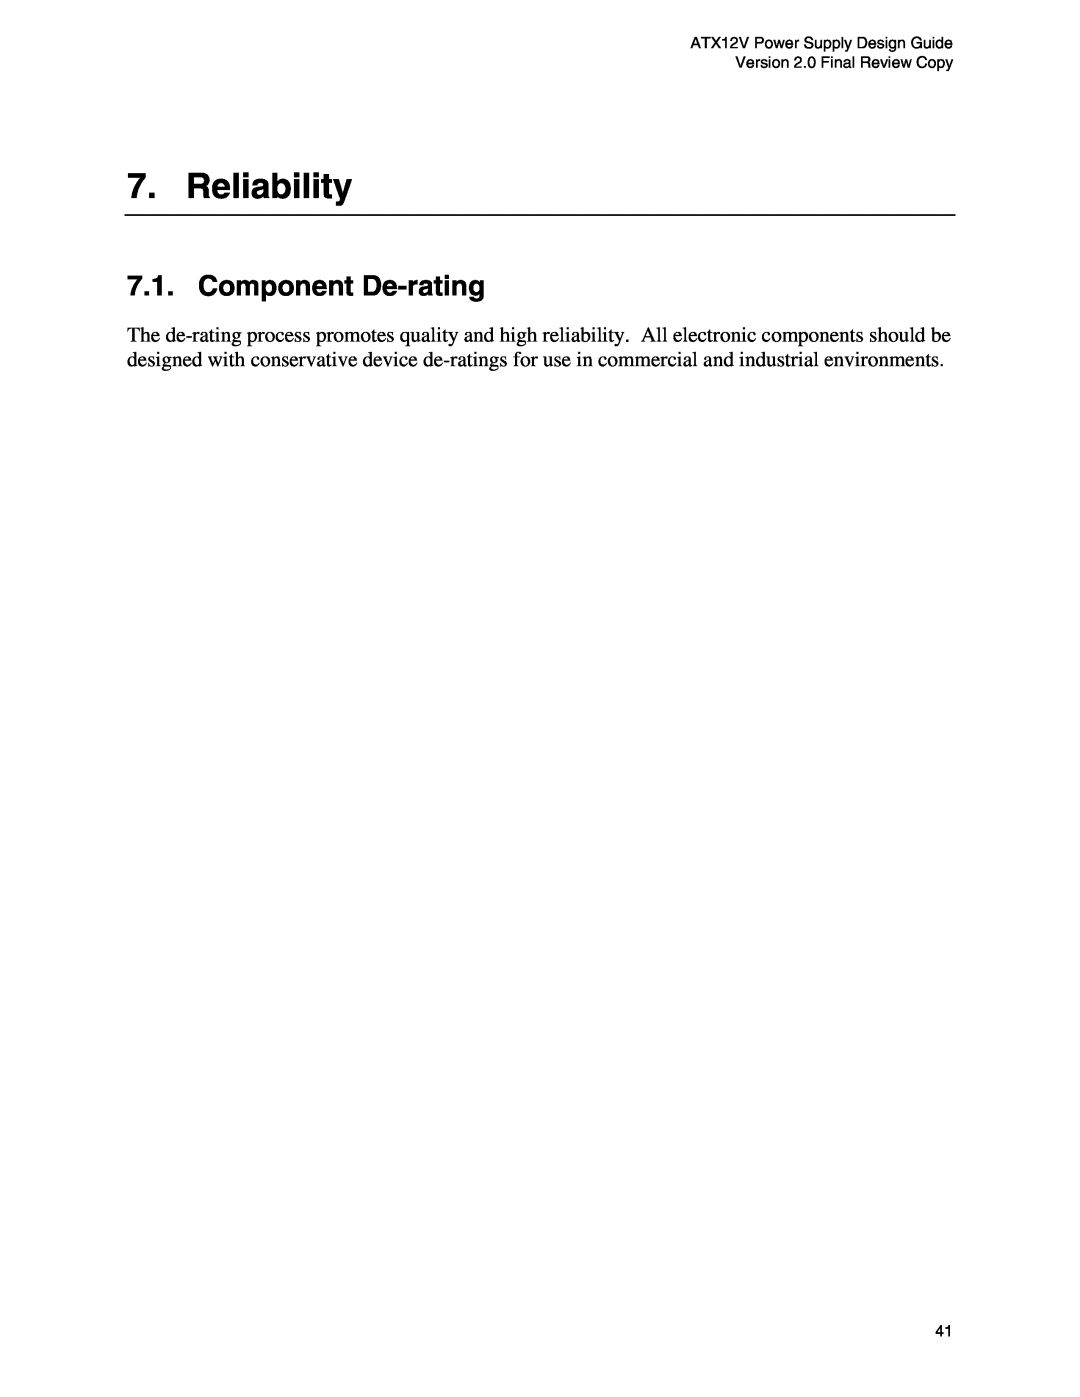 Intel ATX12V manual Reliability, Component De-rating 